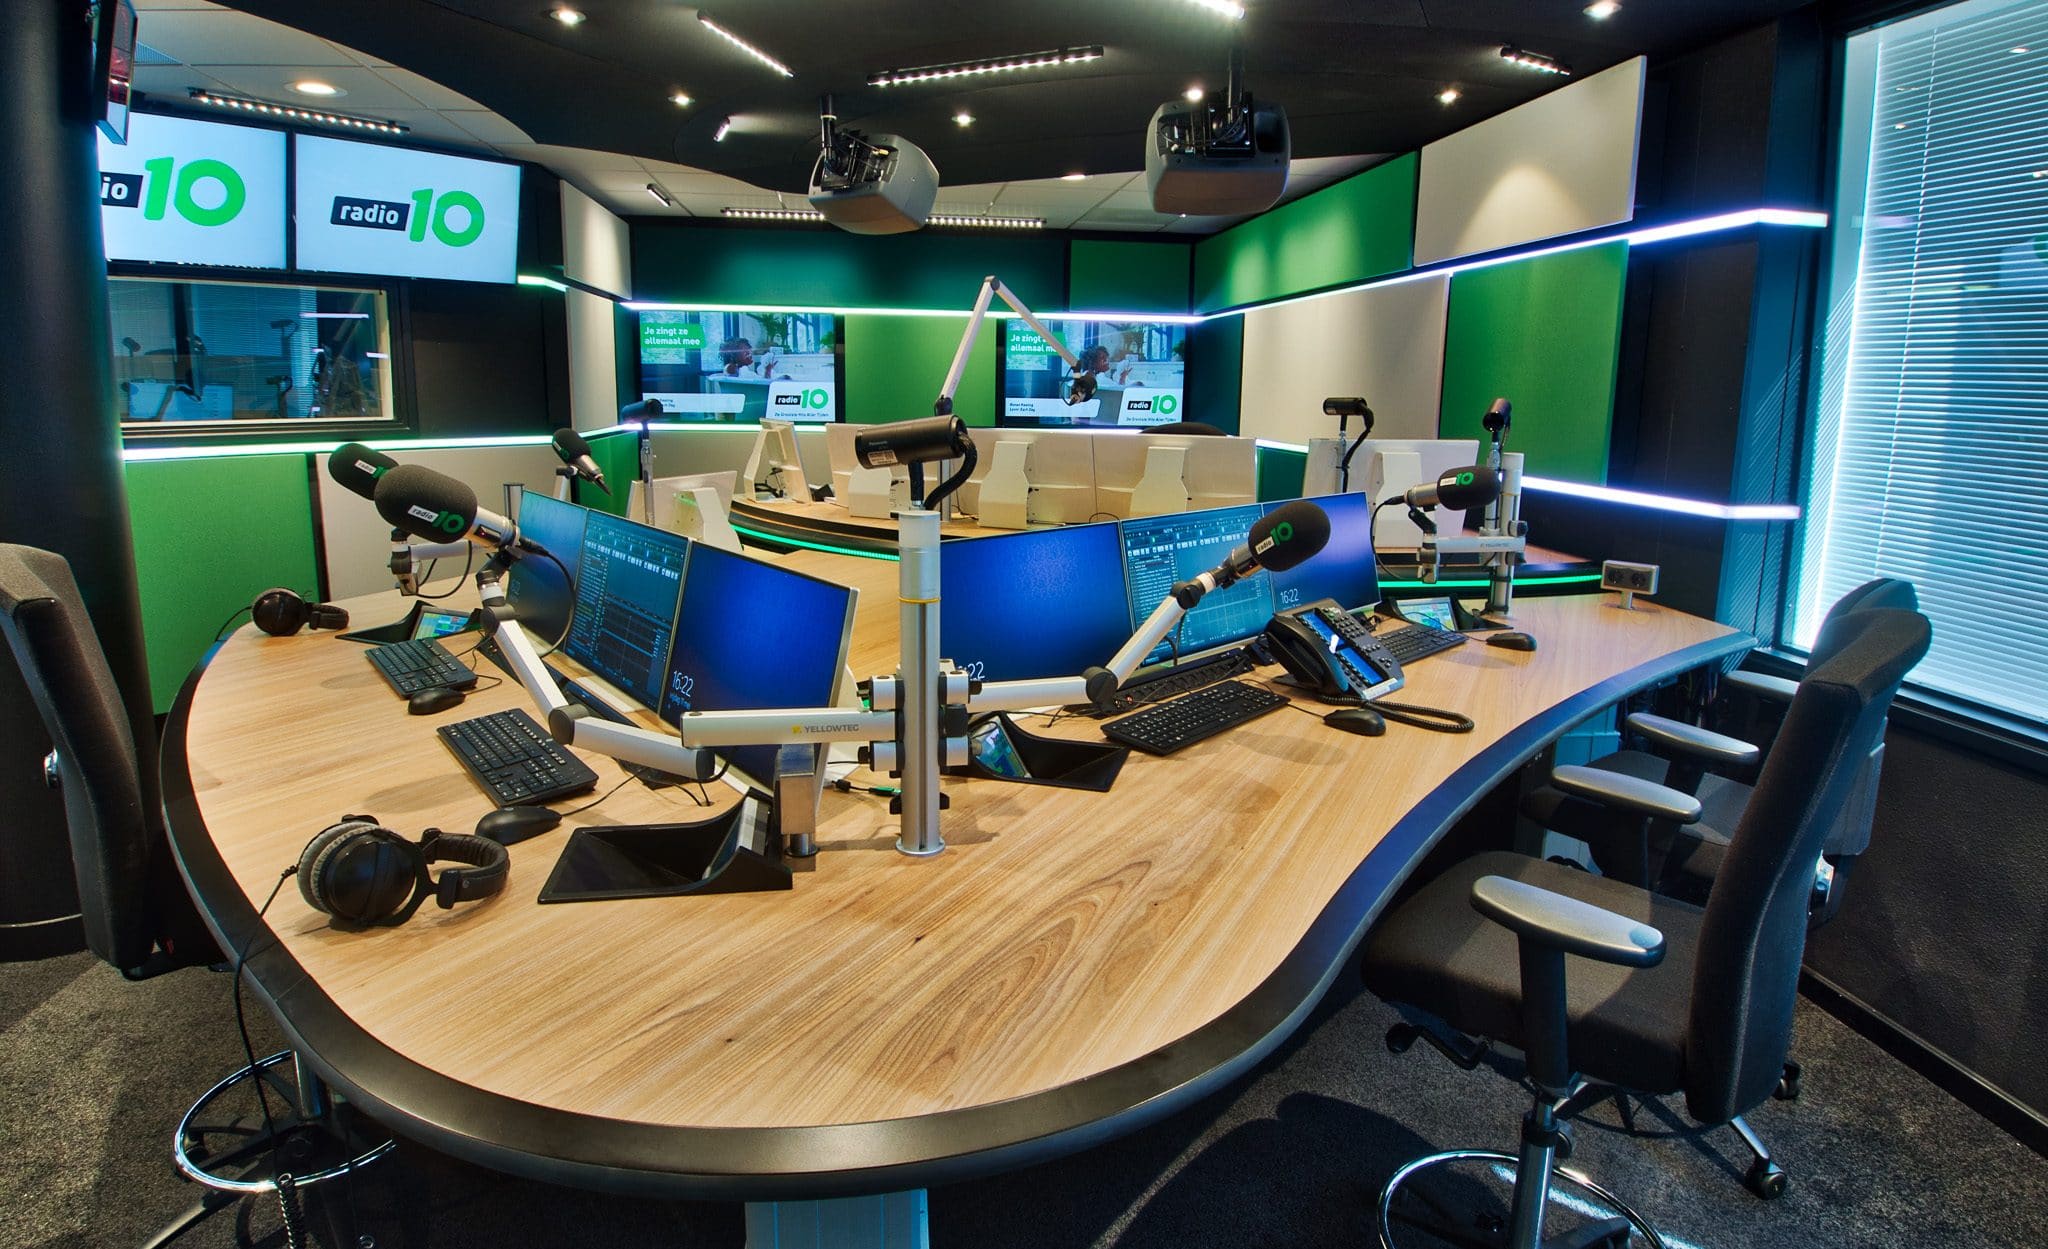 auteursrechten Nodig uit Jet Radio 10 neemt nieuwe studio in gebruik - RadioFreak.nl